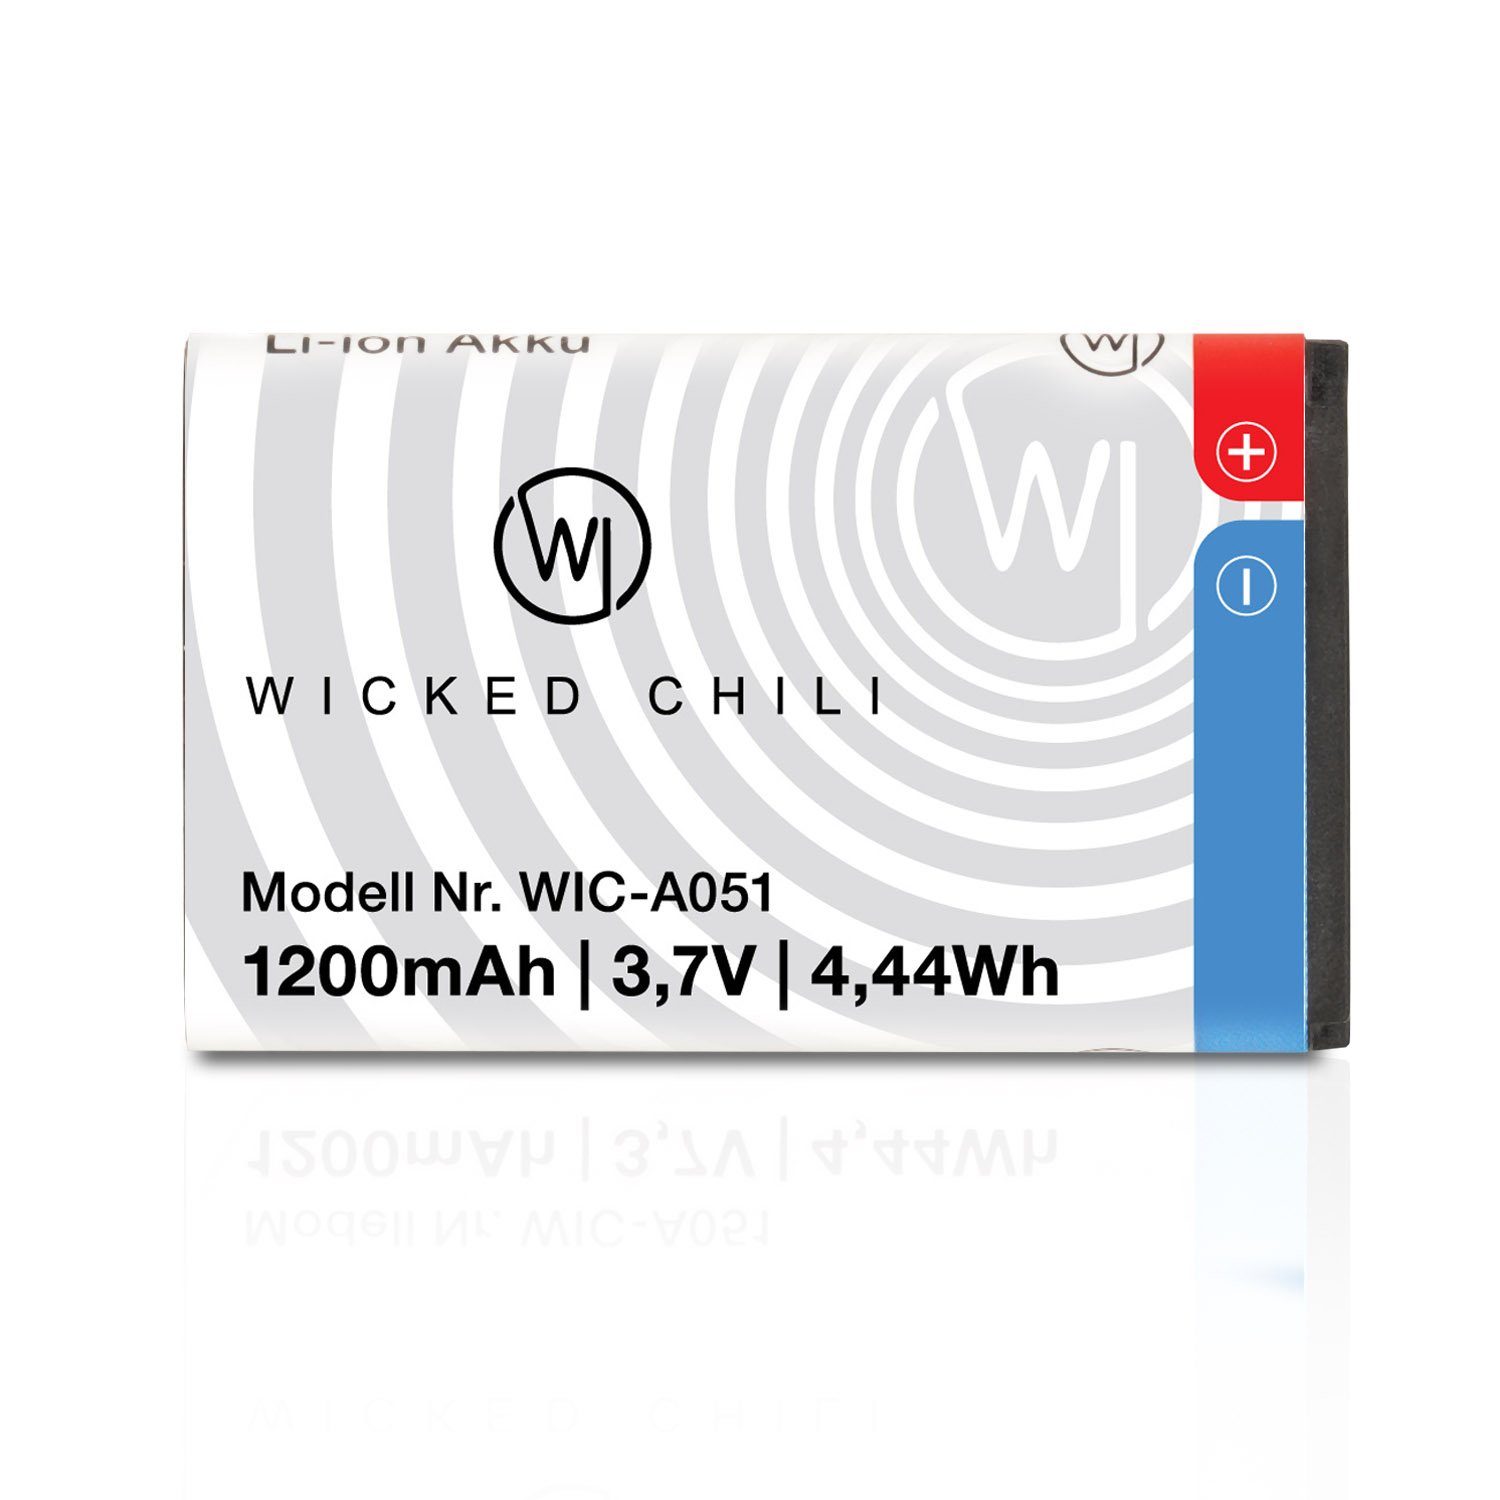 WIC-A051 Wicked Chili Jul 6680 6230i Ersatz-Akku Zusatz-Akku 3110 6230 Nokia BL-5C für 1110 V) (03.